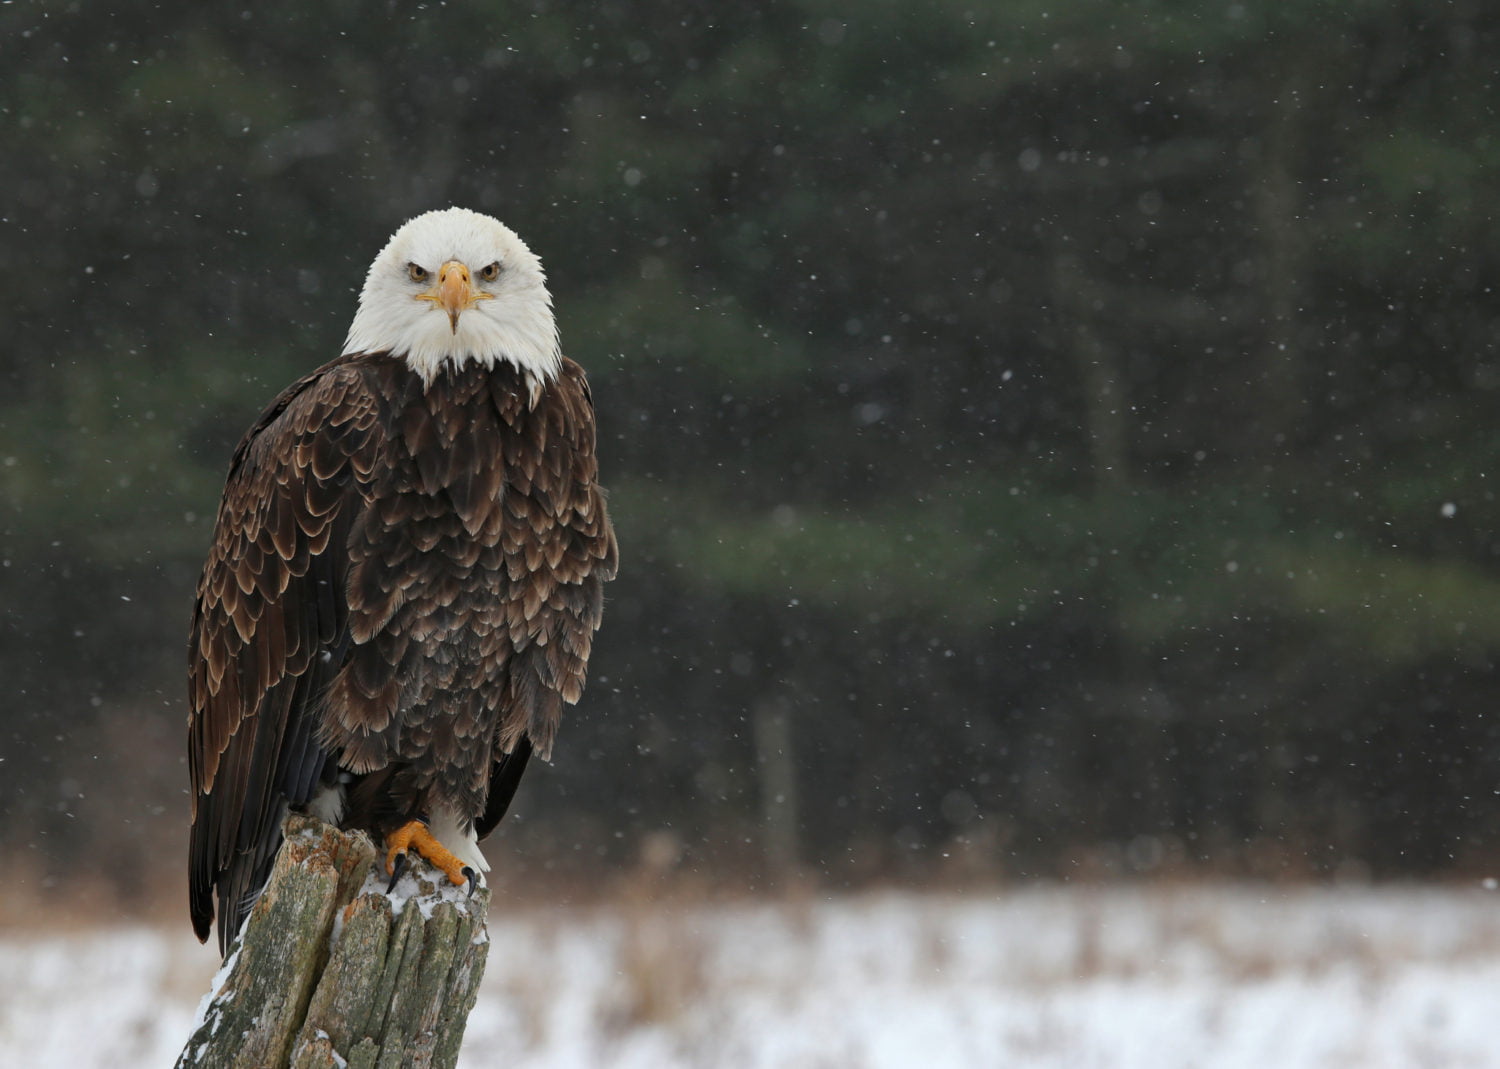 5 Ways to Eagle Watch in the Poconos